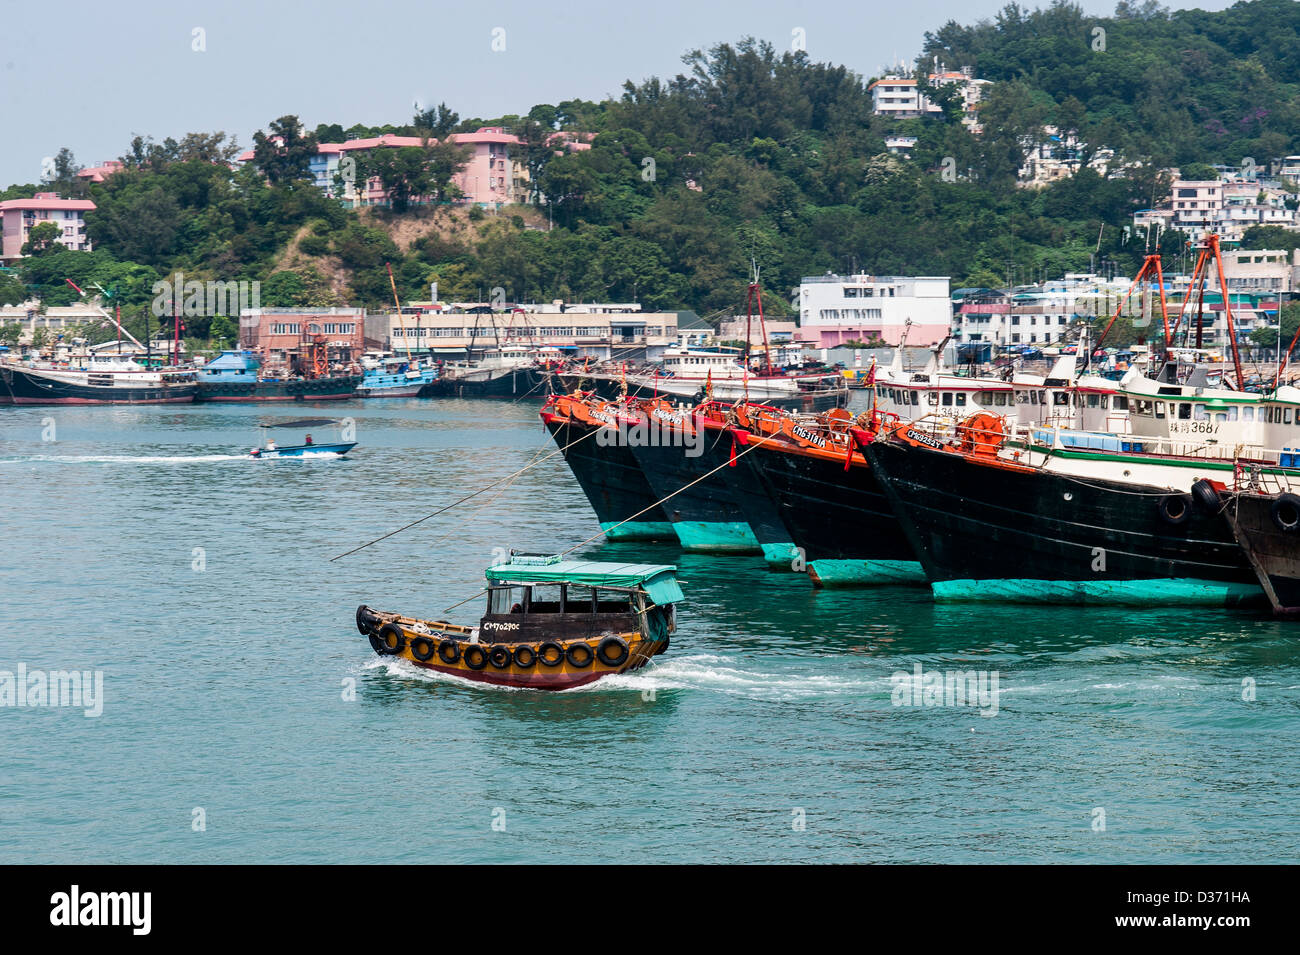 HONG KONG - SAR of CHINA: A little boat crosses Chuen Chau island's harbor in Hong Kong Stock Photo